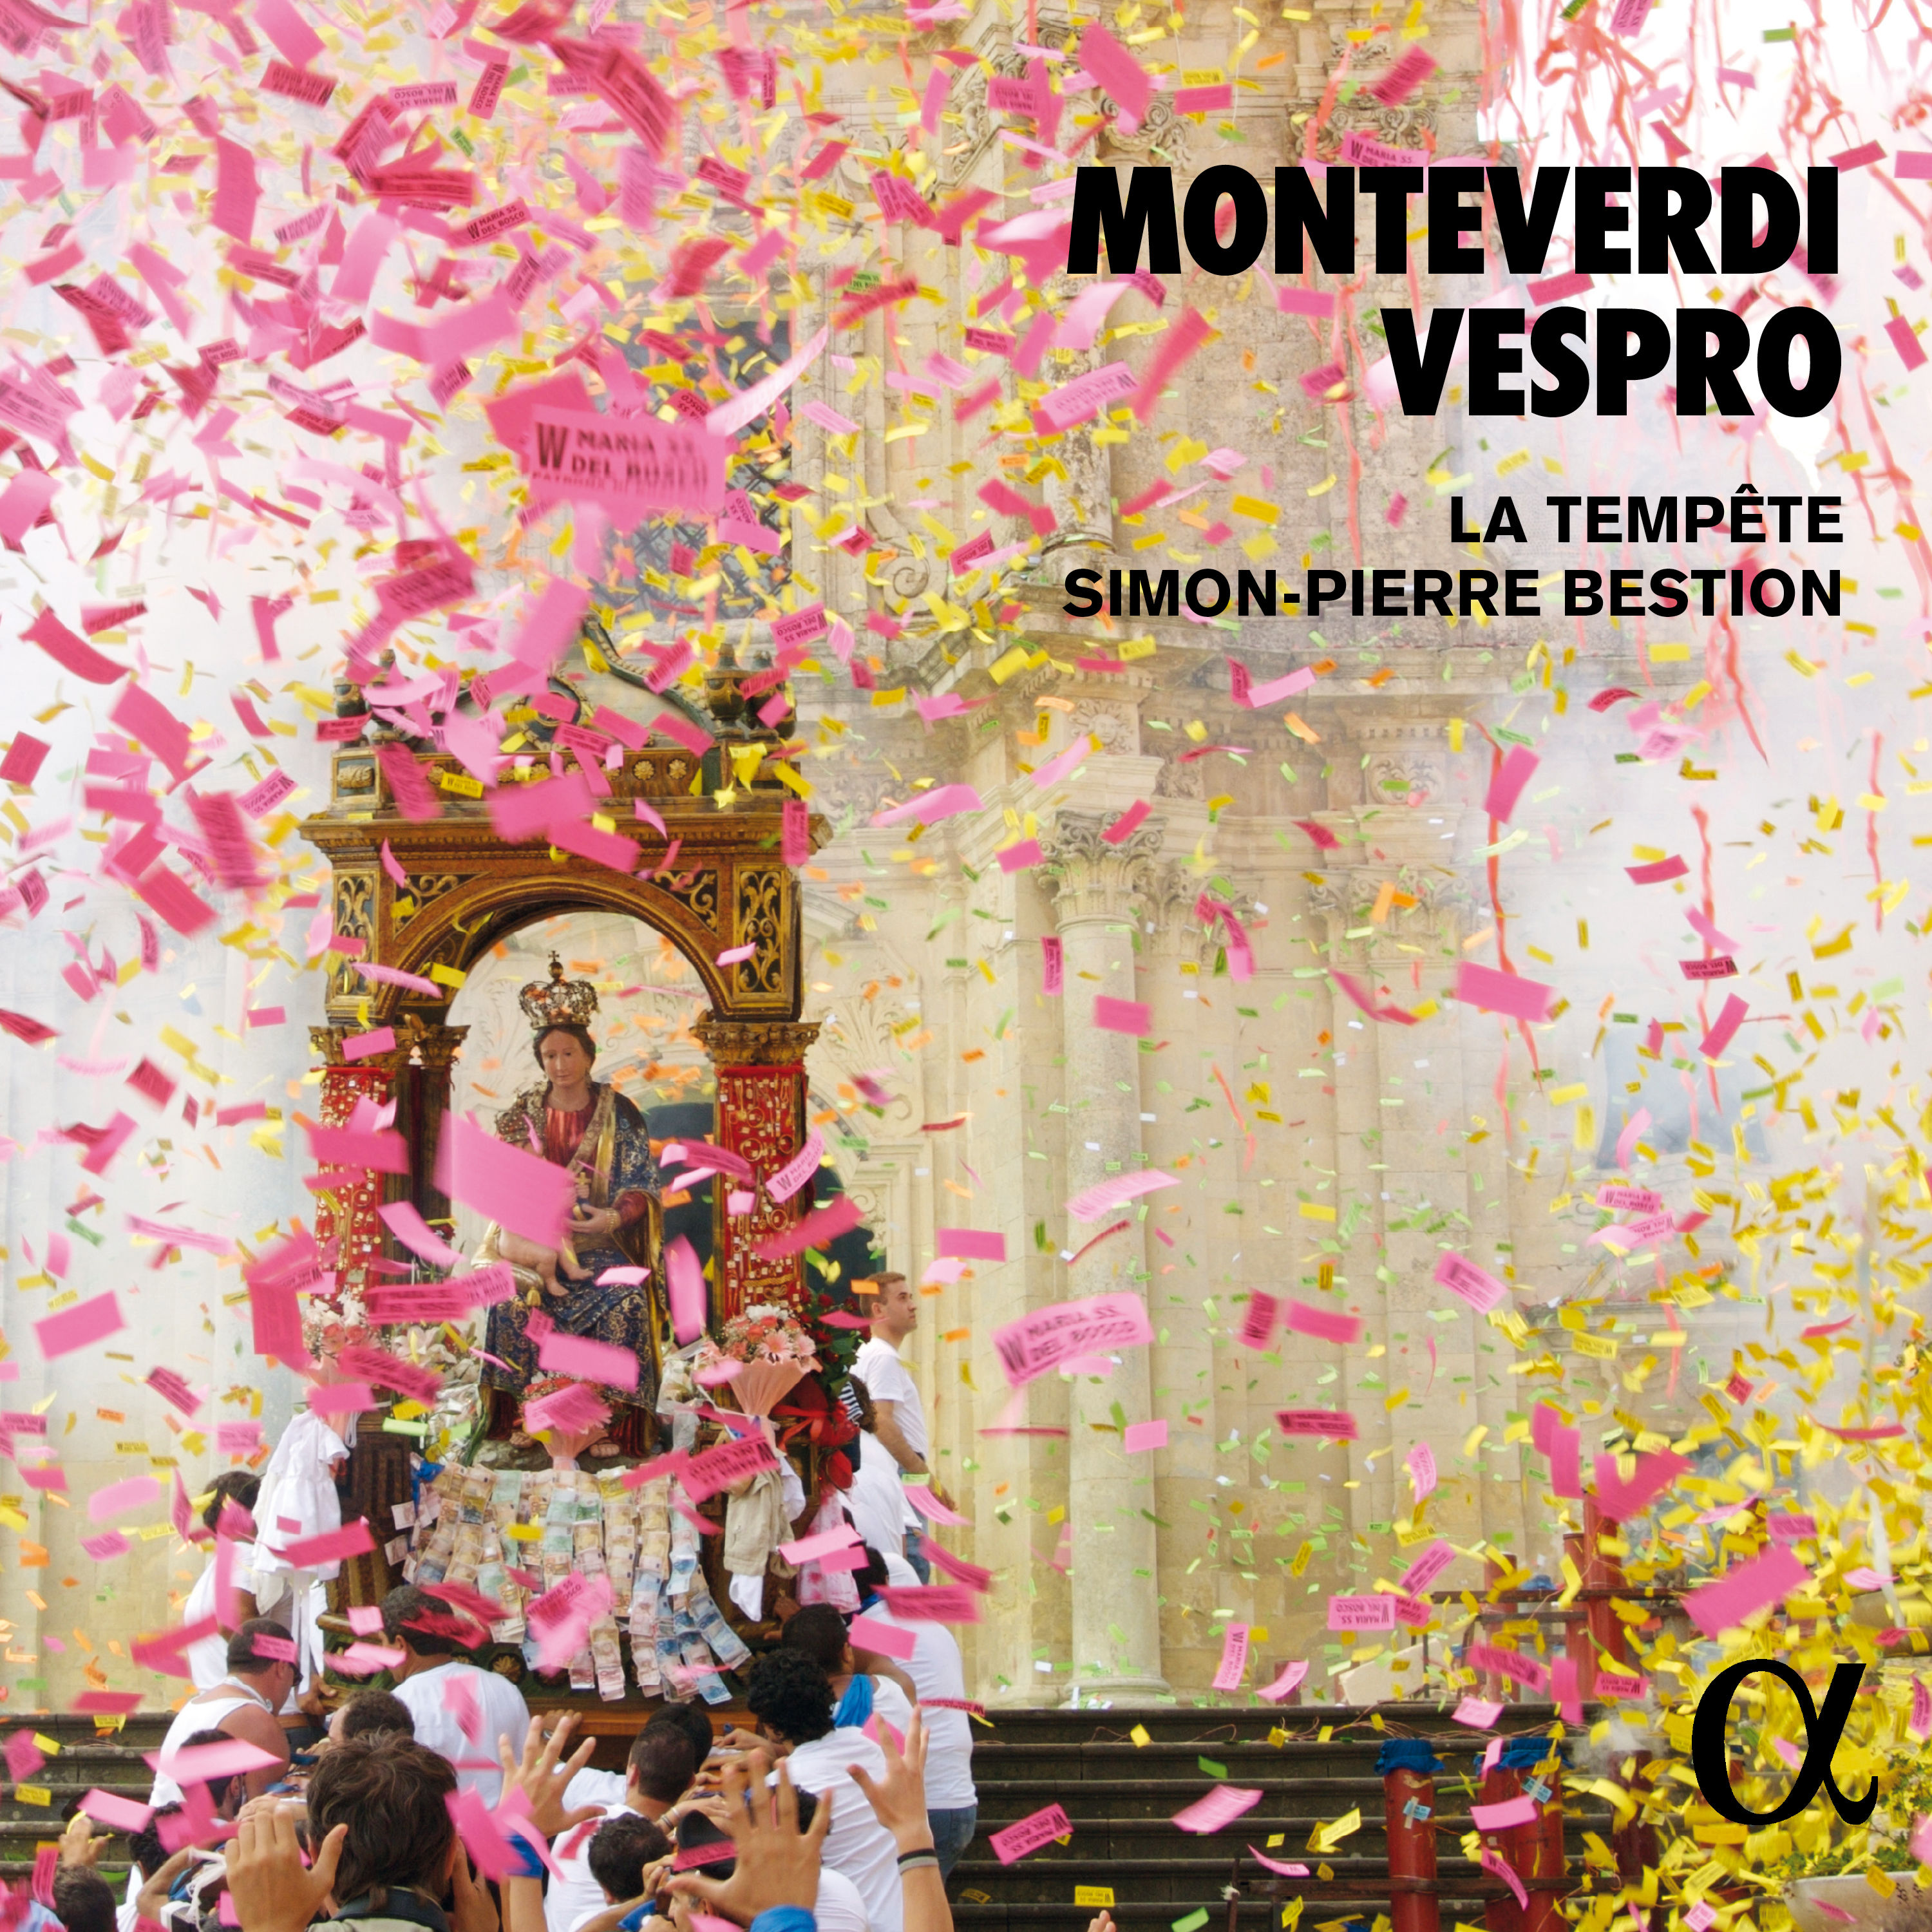 La tempete, Simon-Pierre Bestion - Monteverdi: Vespro (2019) [FLAC 24bit/96kHz]